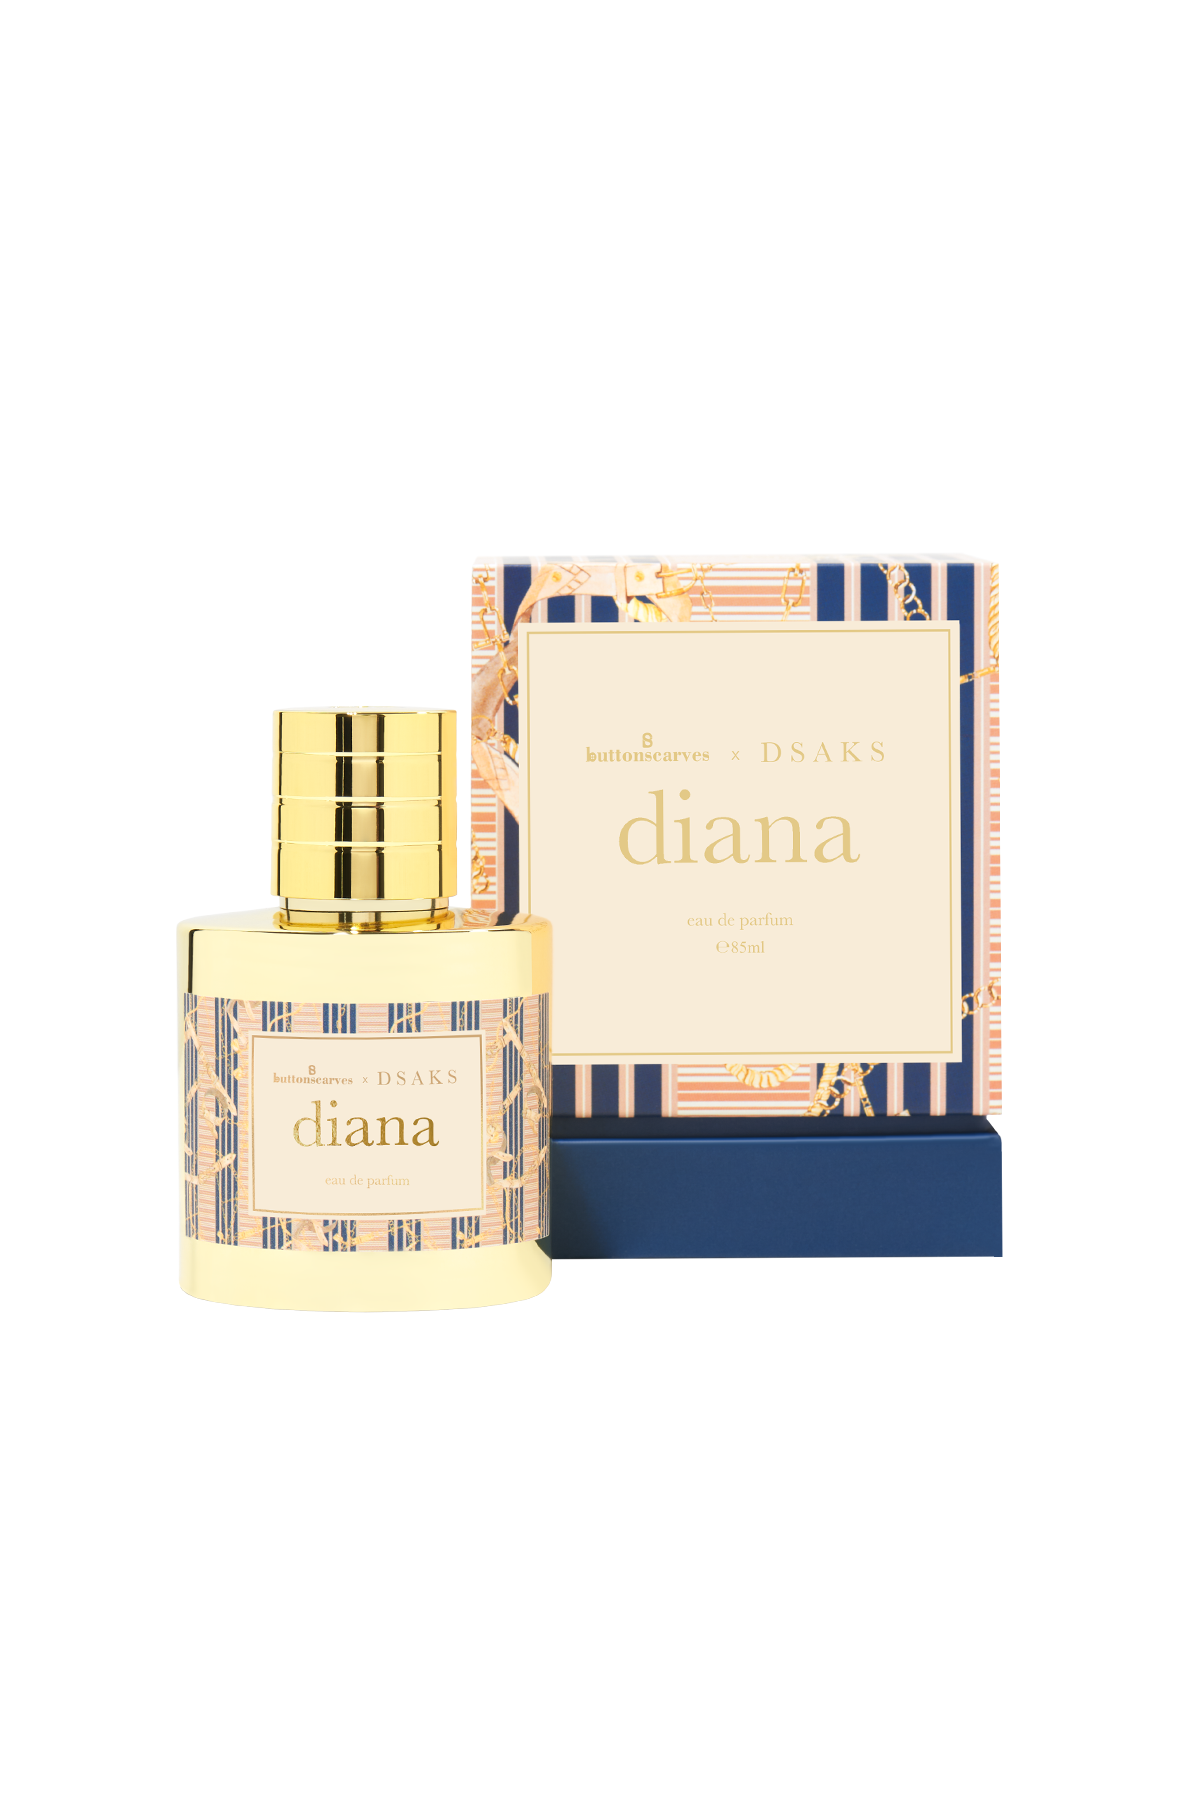 Buttonscarves x Dsaks - Diana Eau De Perfume 40ml